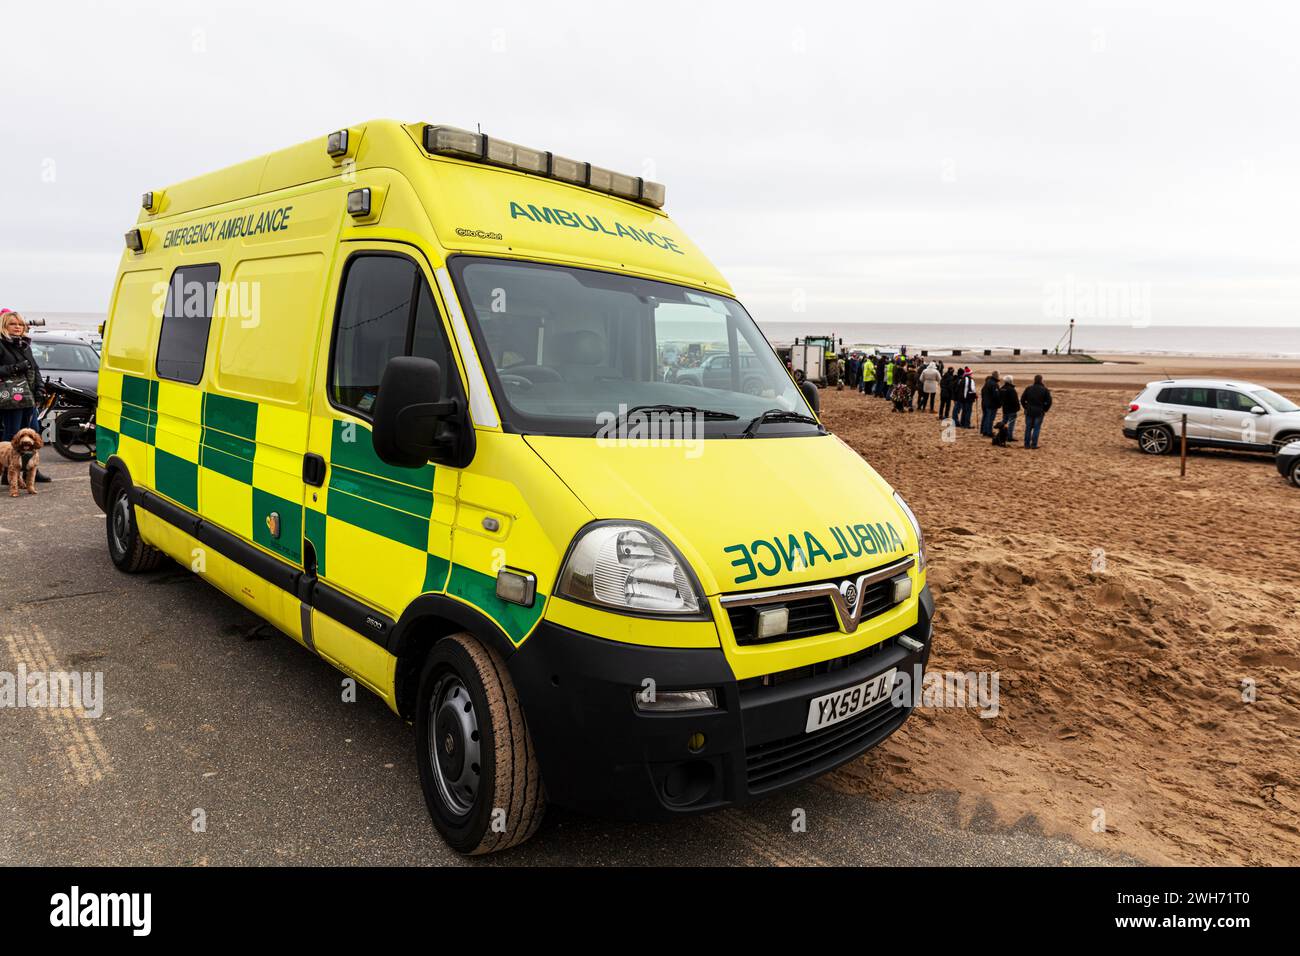 UK Ambulance, Ambulance, ambulance UK, medical emergency, response, medical, NHS, service, emergency service, UK, England, British, English, ambulance Stock Photo